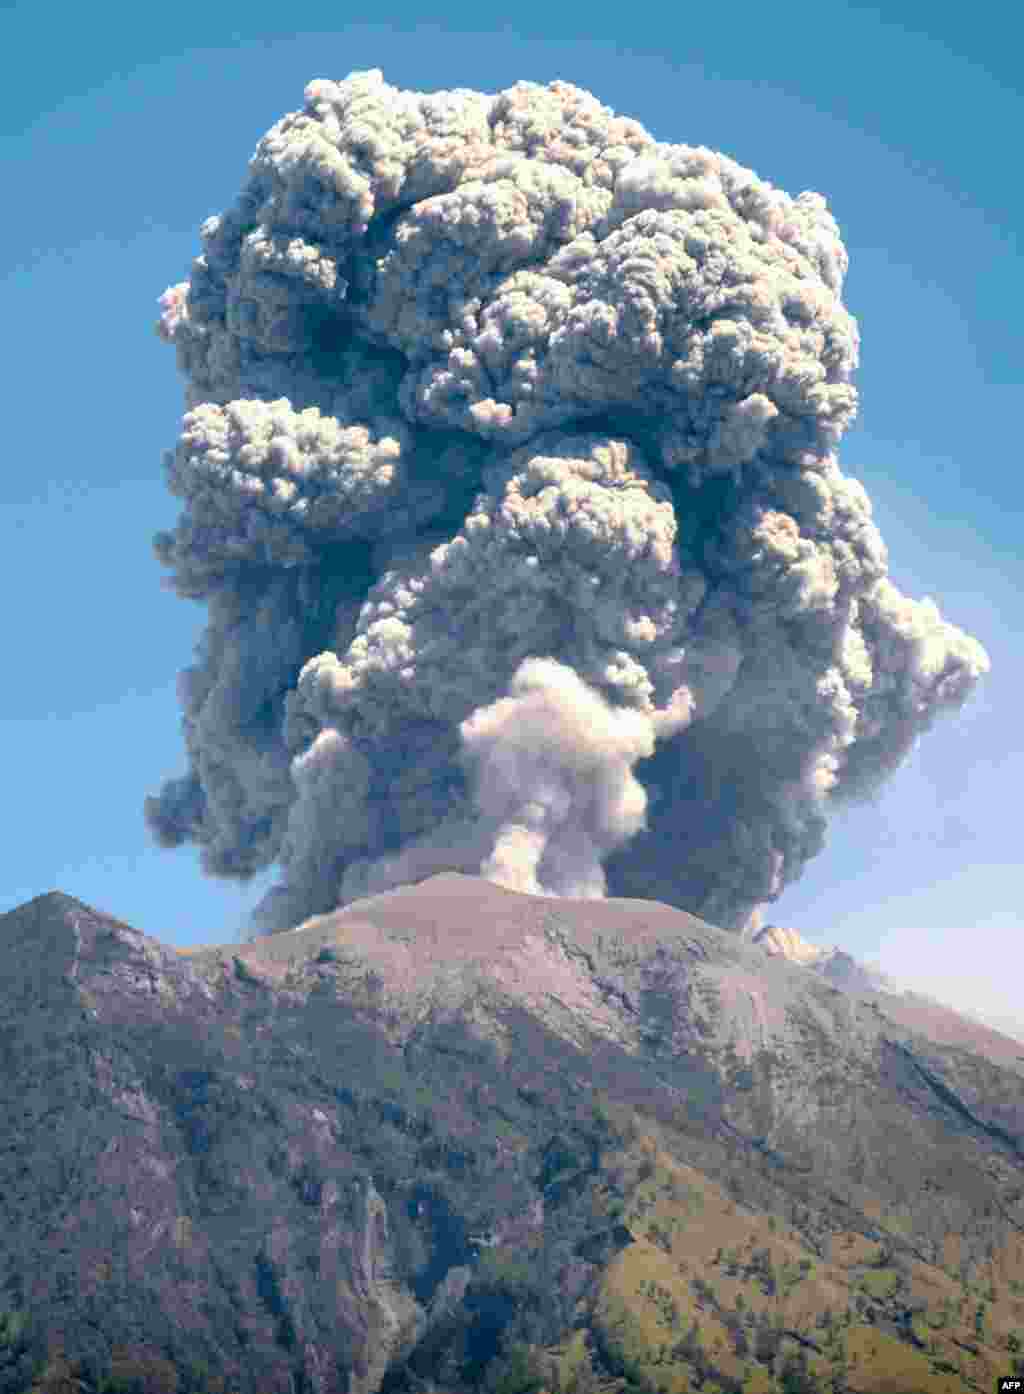 دود و خاکستر برآمده از فوران کوه آتشفشان در بالی اندونزی &nbsp;